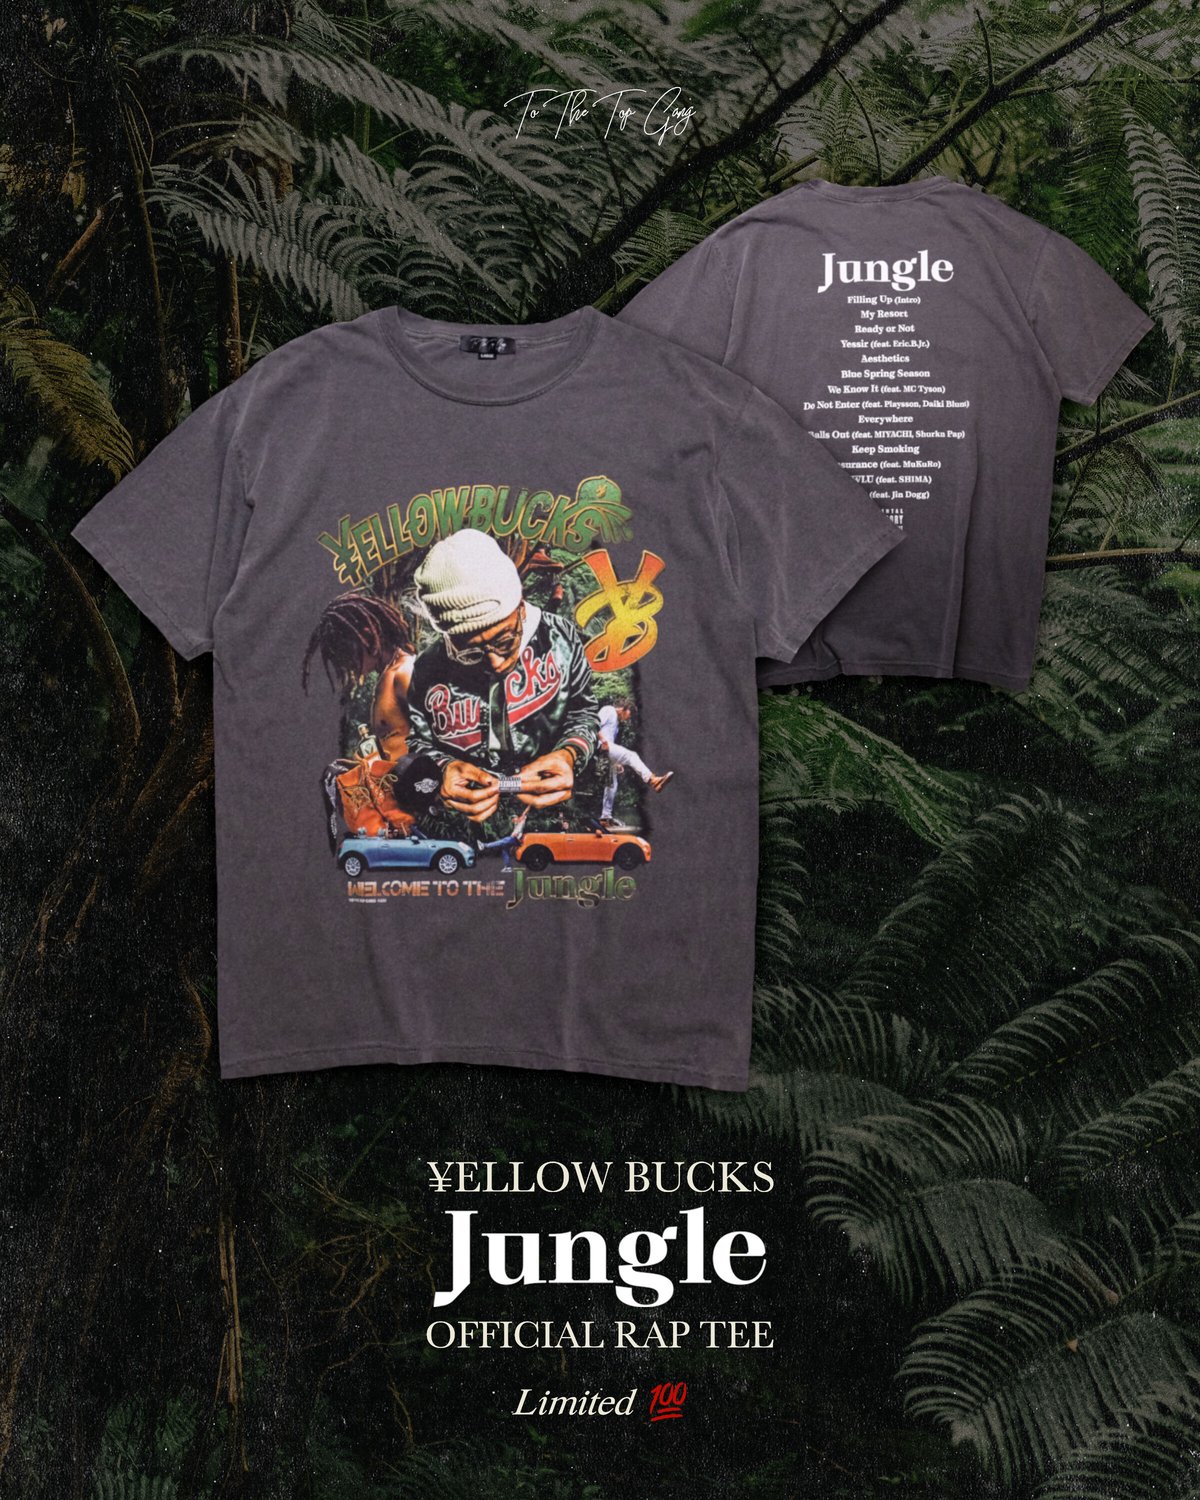 ¥ELLOW BUCKS “Jungle” Official Rap Tee